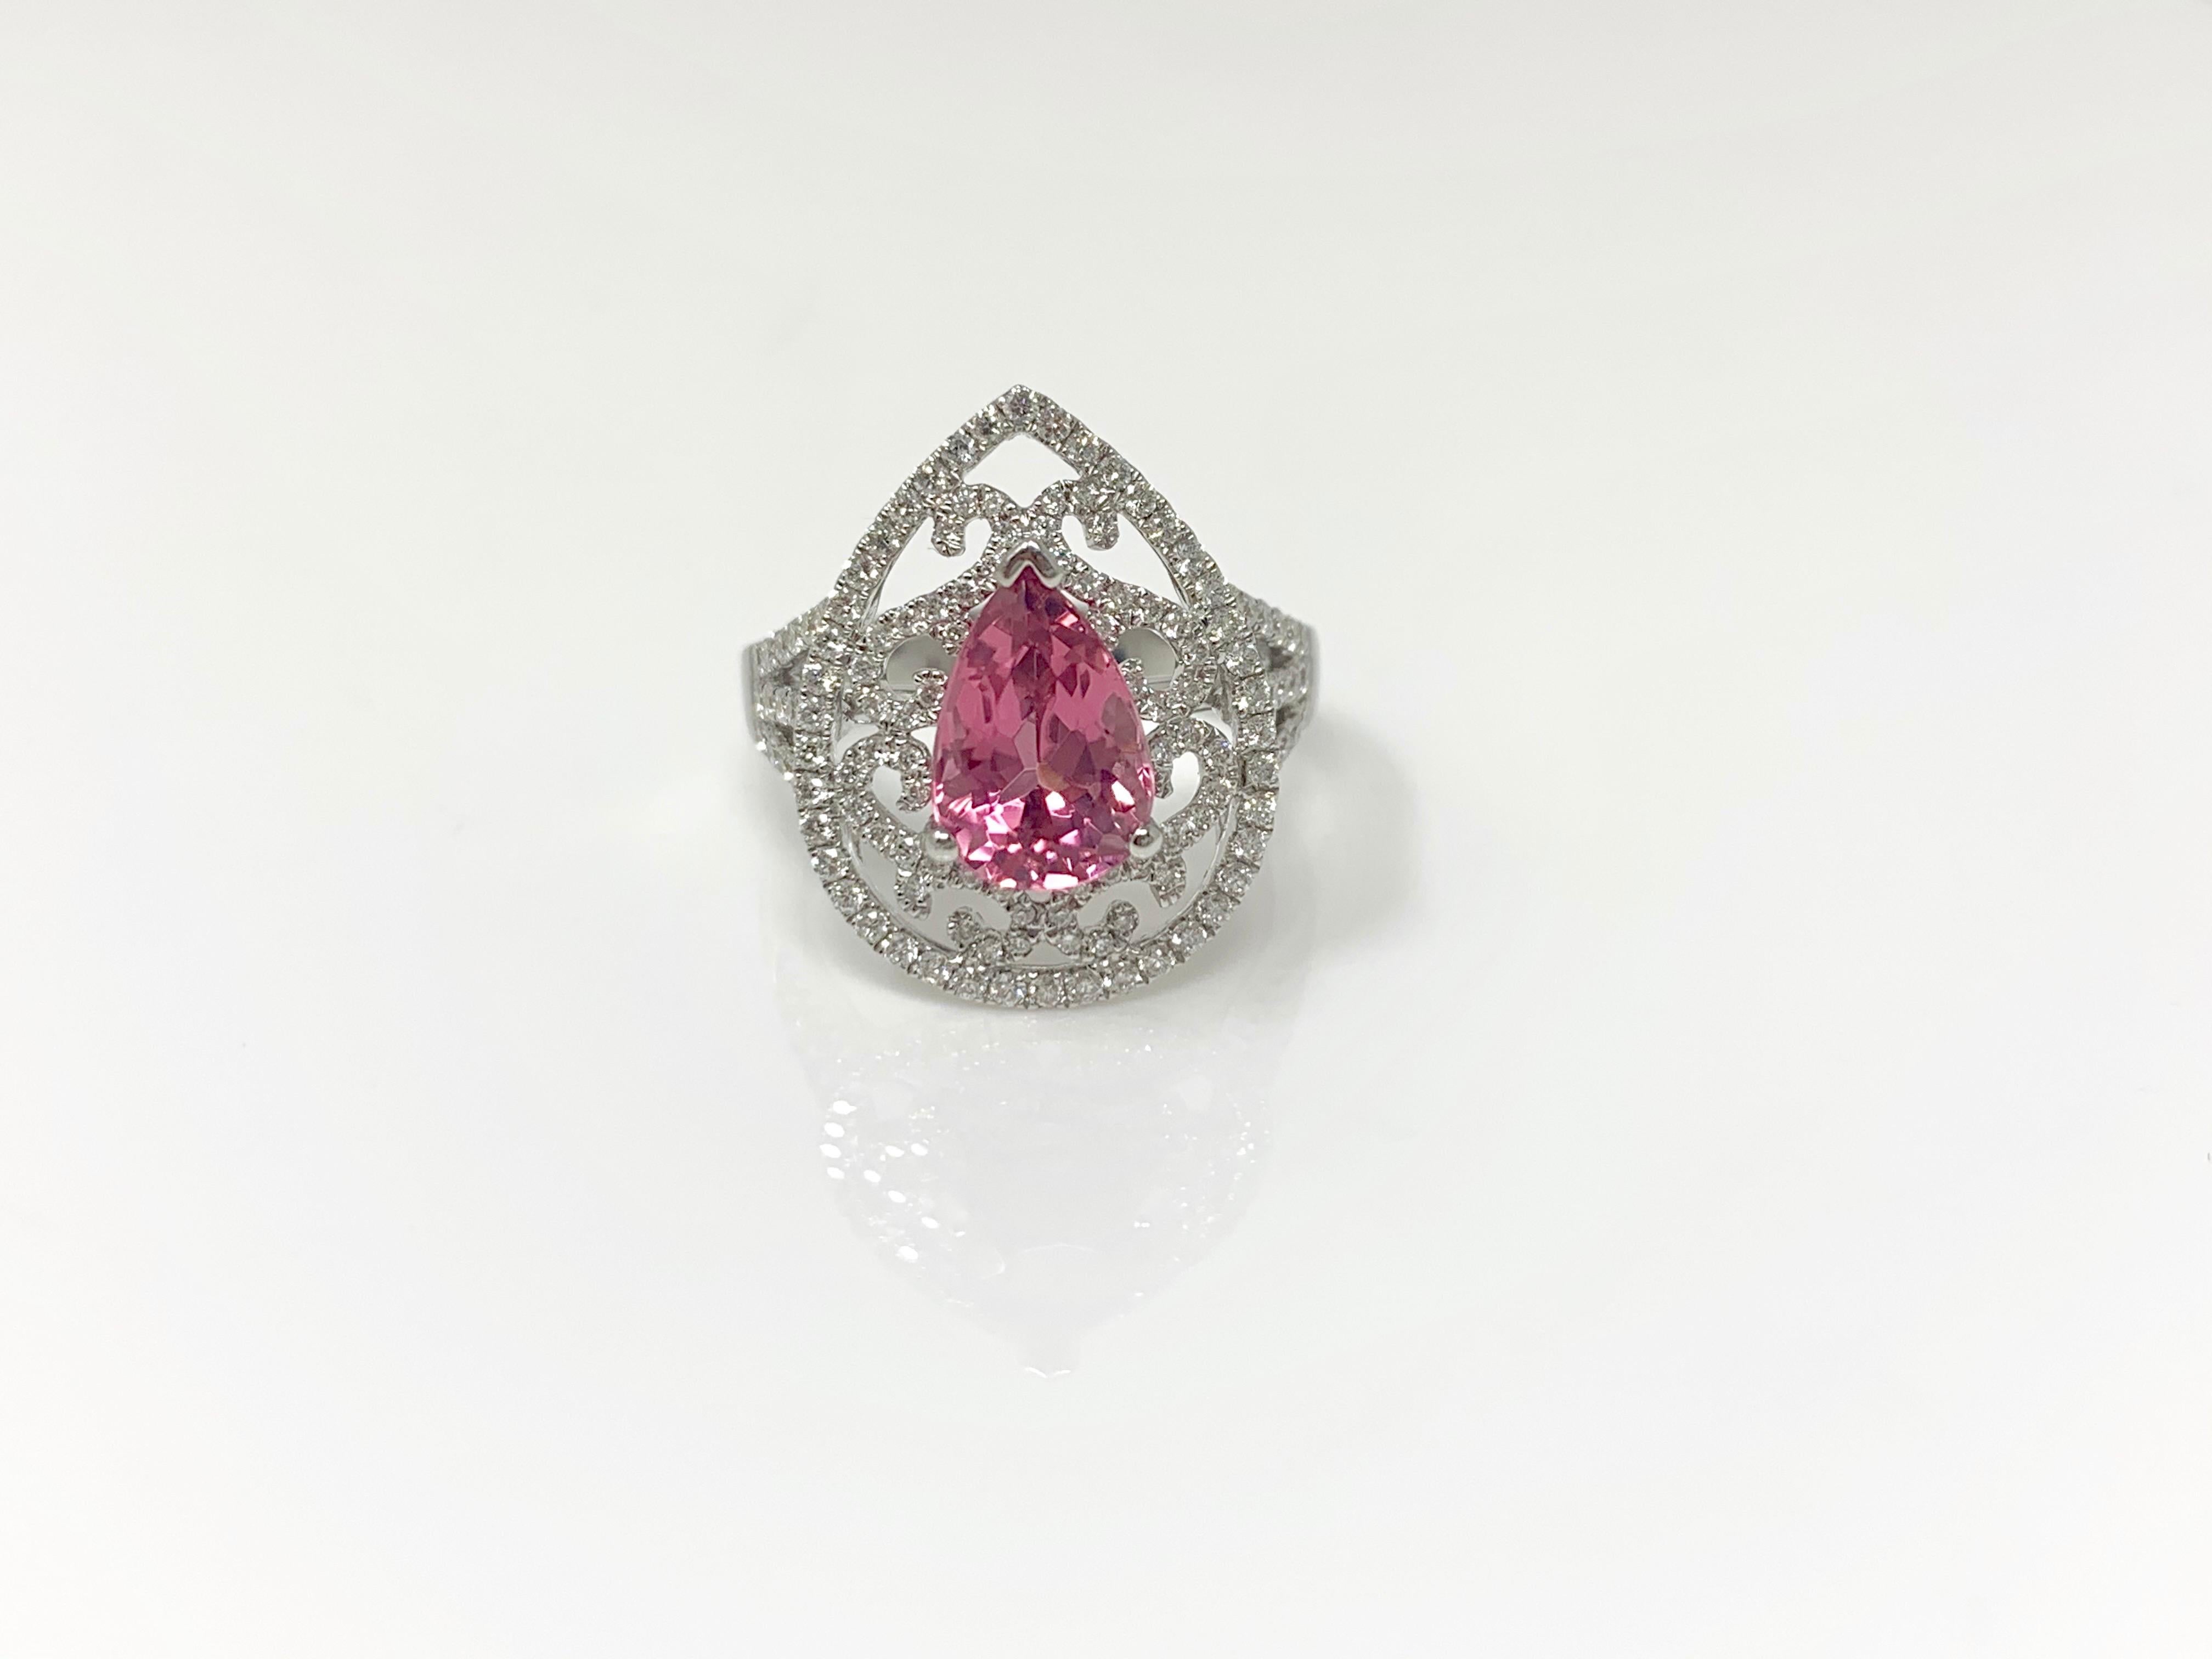 Moguldiam Inc pink sapphire and diamond ring custom handmade in 18k white gold . 
Pink sapphire : 2.19 carat 
Diamond weight : 0.75 carat 
Metal : 18 k white gold 
ring size : 6 1/2 

